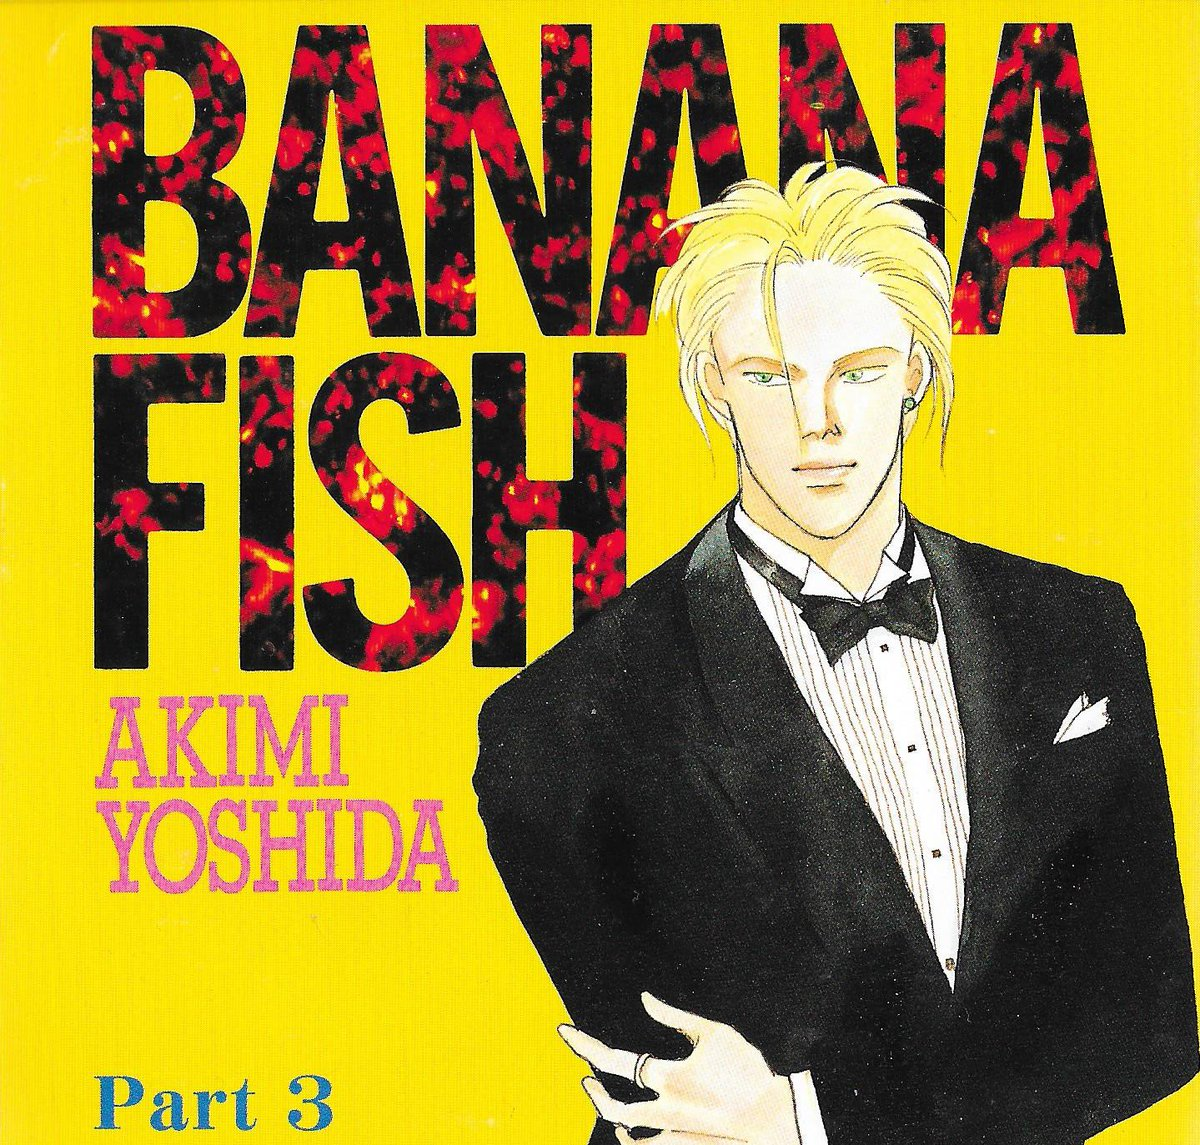 BANANA FISH 3 (CD Drama) | BANANA FISH Wiki | Fandom